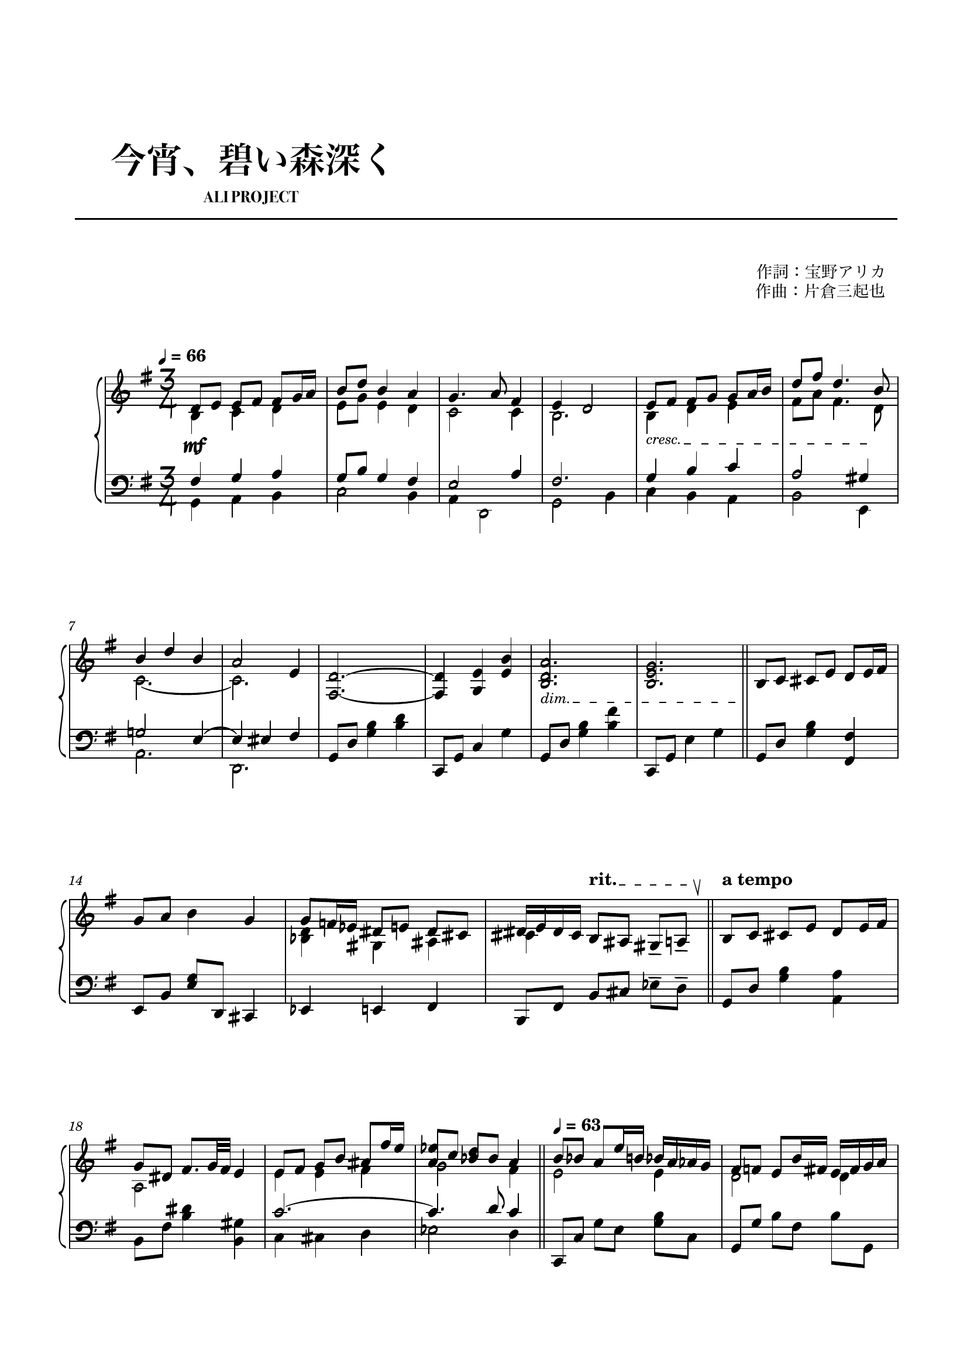 ALI PROJECT - 今宵、碧い森深く (ピアノソロ) by やすpiano